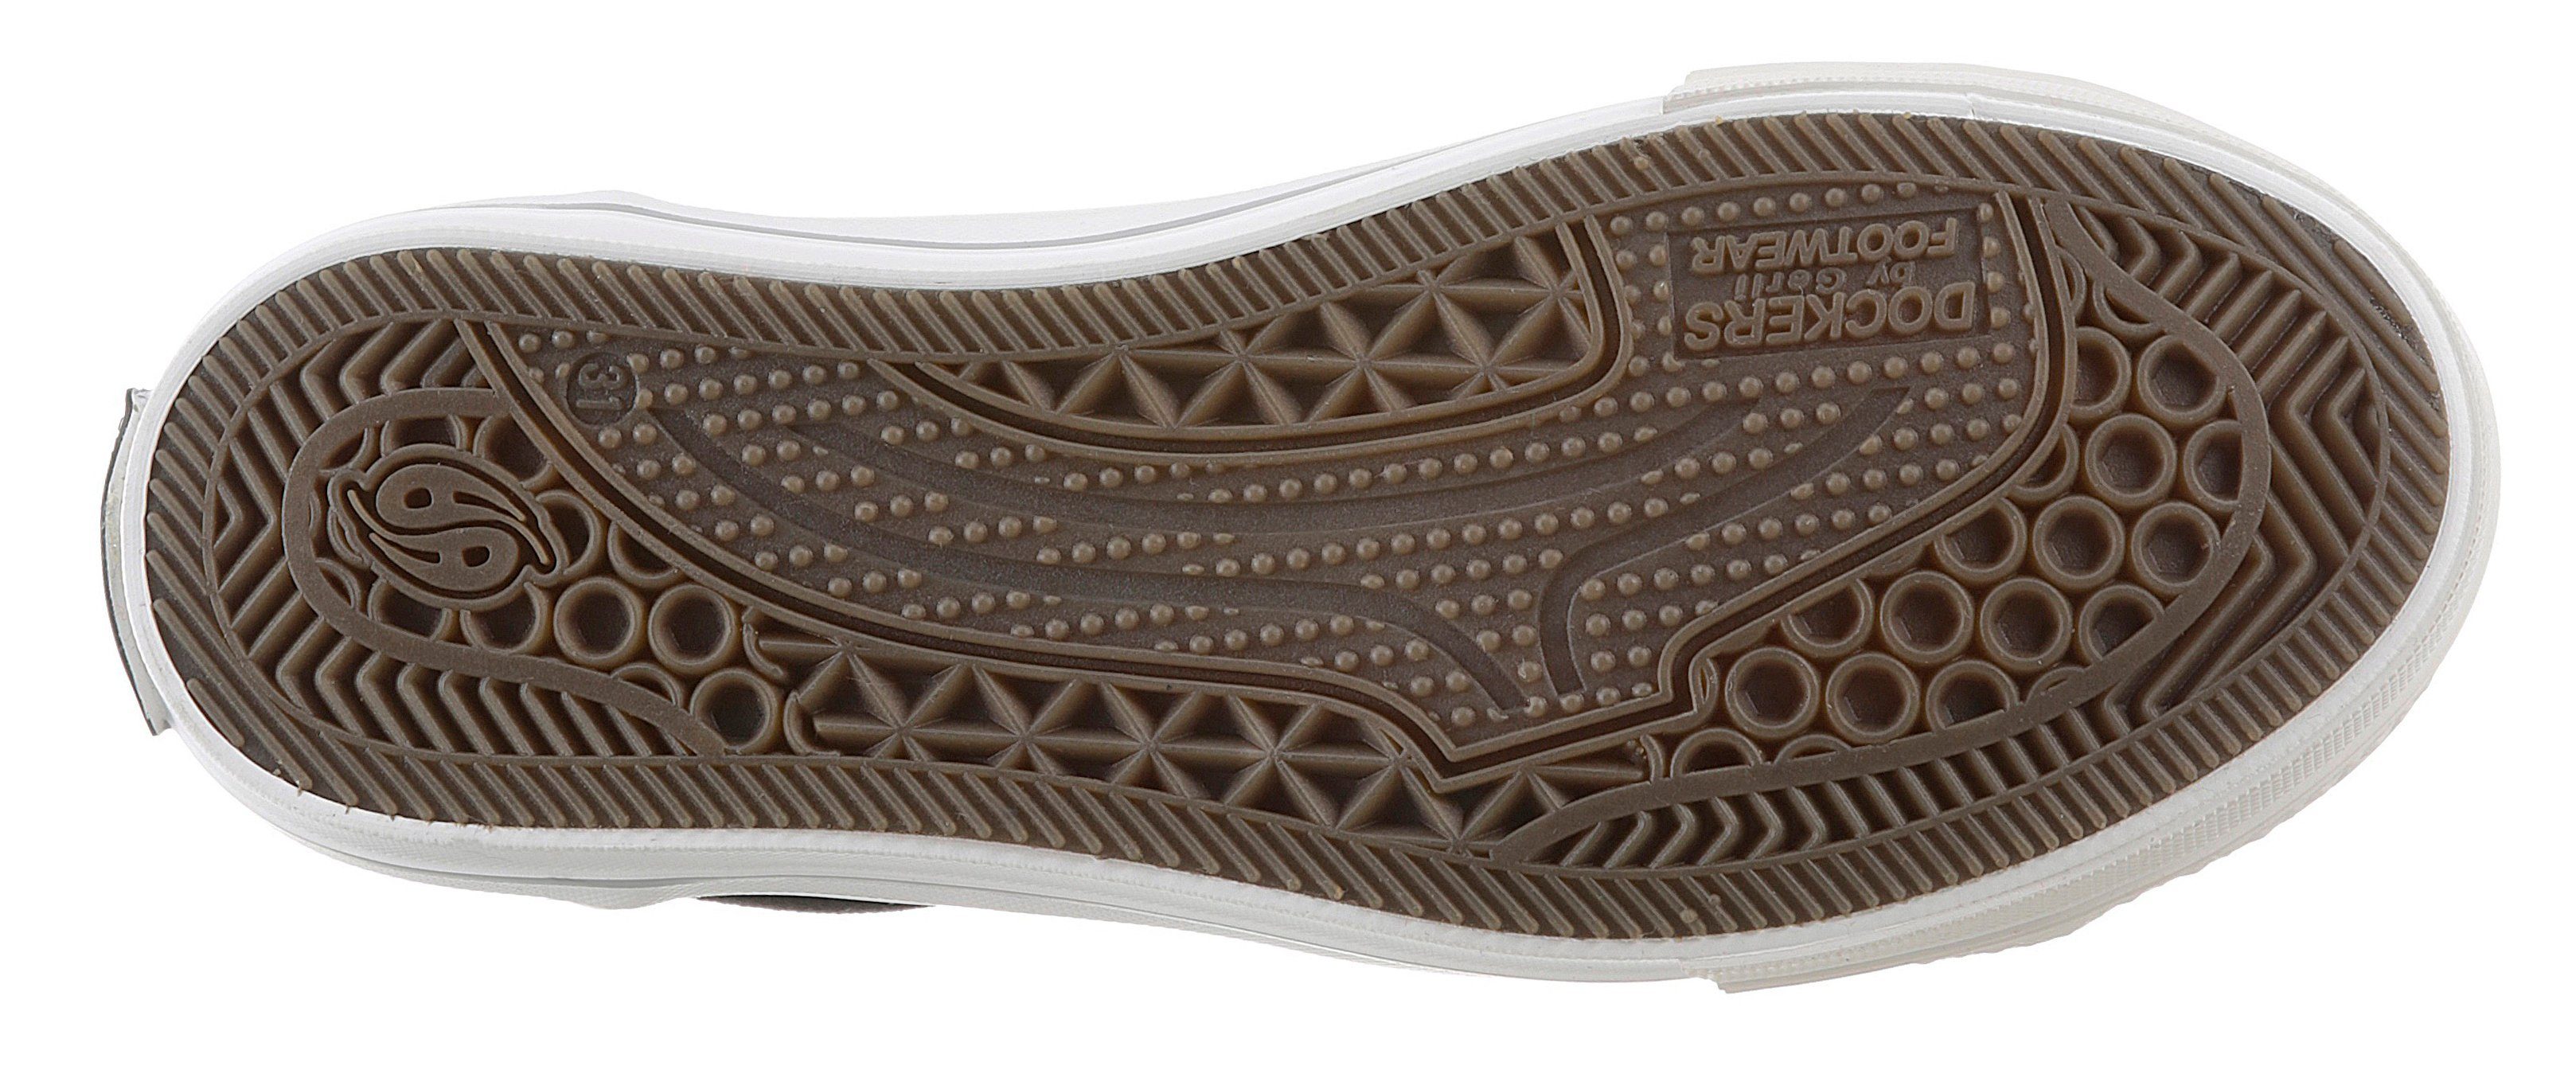 Ziernähten Dockers Slip-On Sneaker by mit Gerli kontrastfarbenen